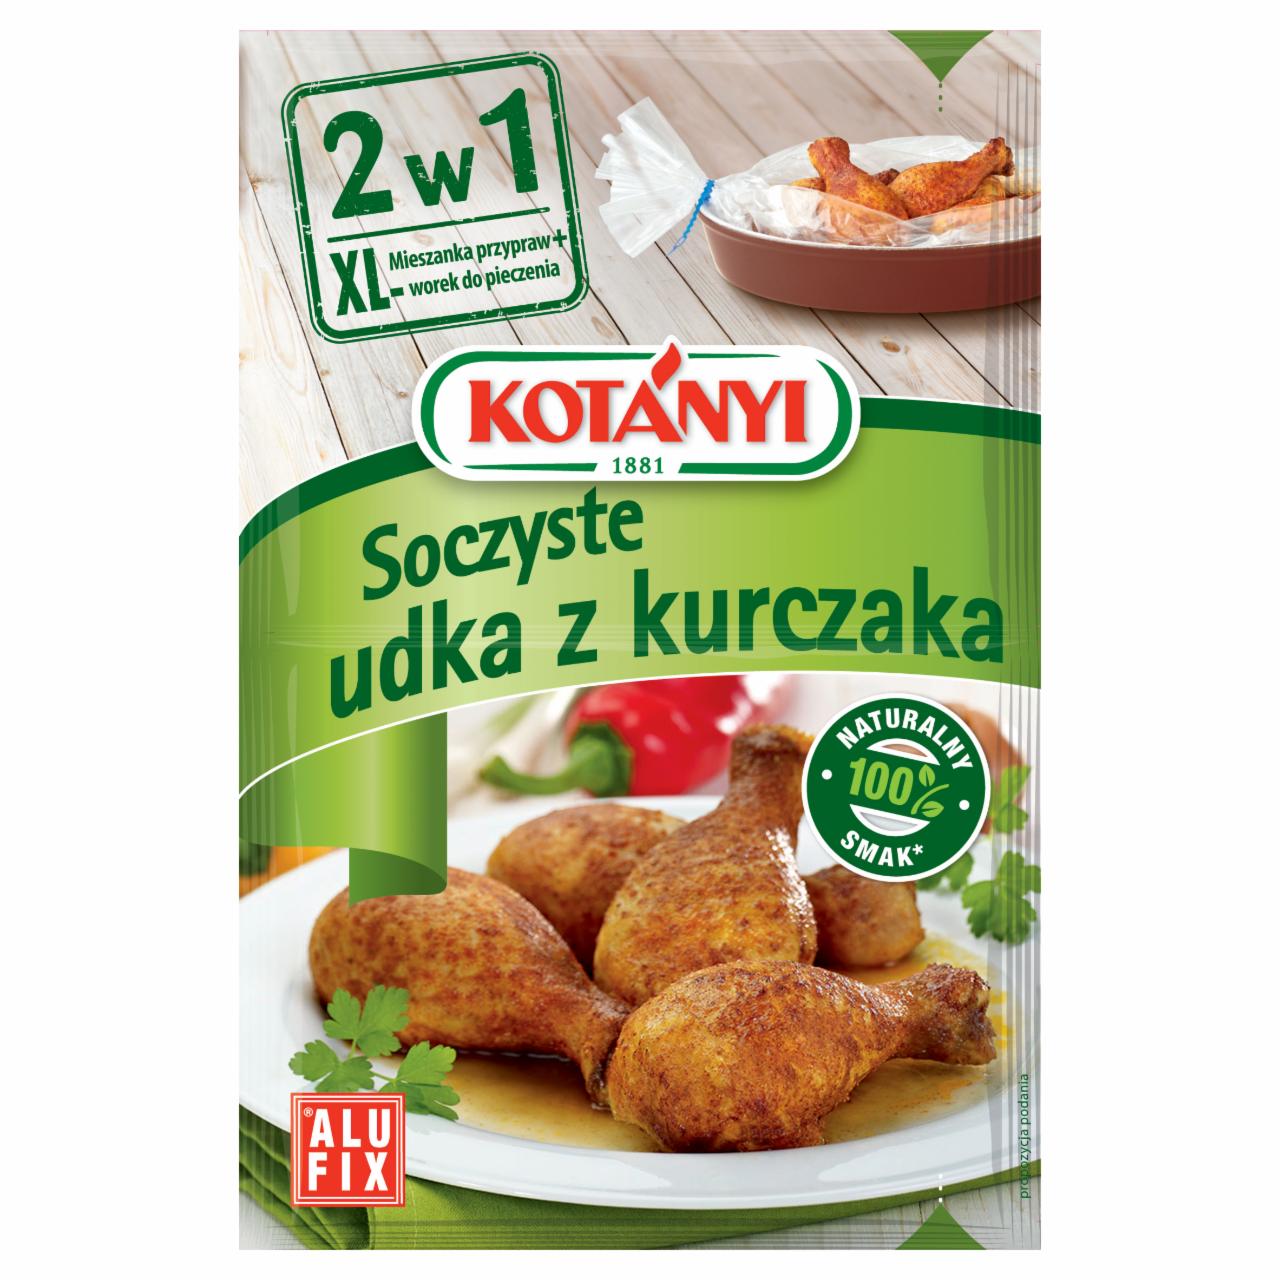 Zdjęcia - Kotányi 2w1 Soczyste udka z kurczaka Mieszanka przypraw z workiem do pieczenia 25 g